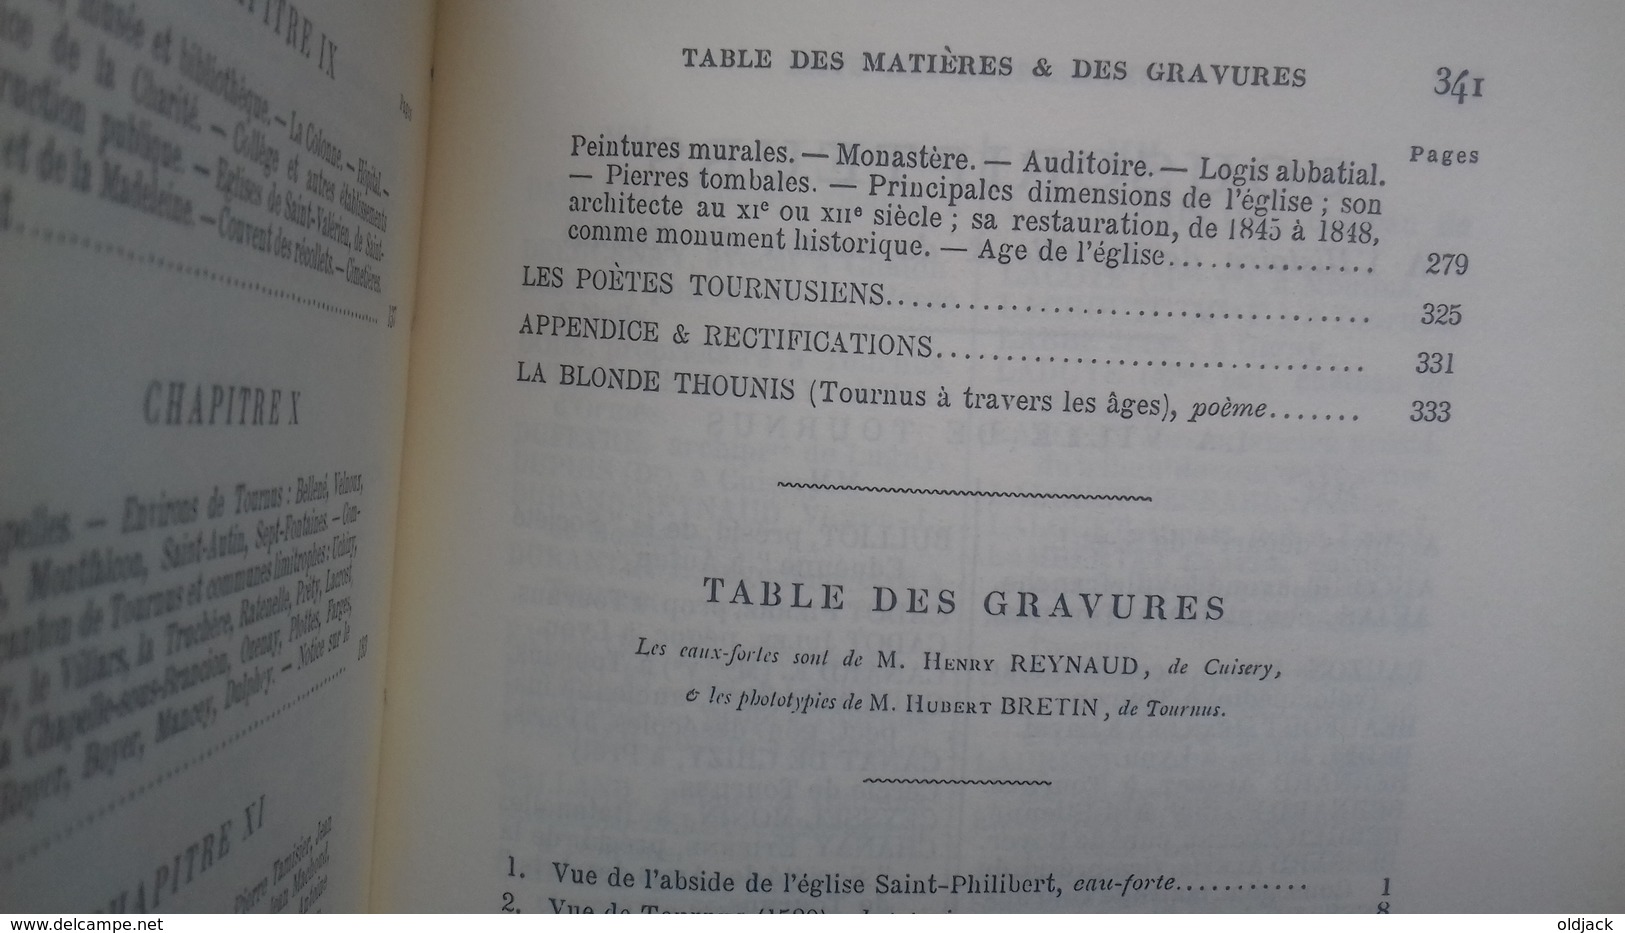 MEULIEN E."Histoire de la ville et du canton de TOURNUS "(71S&L)1995(col12d) Réédition de l'ouvrage de 1892.